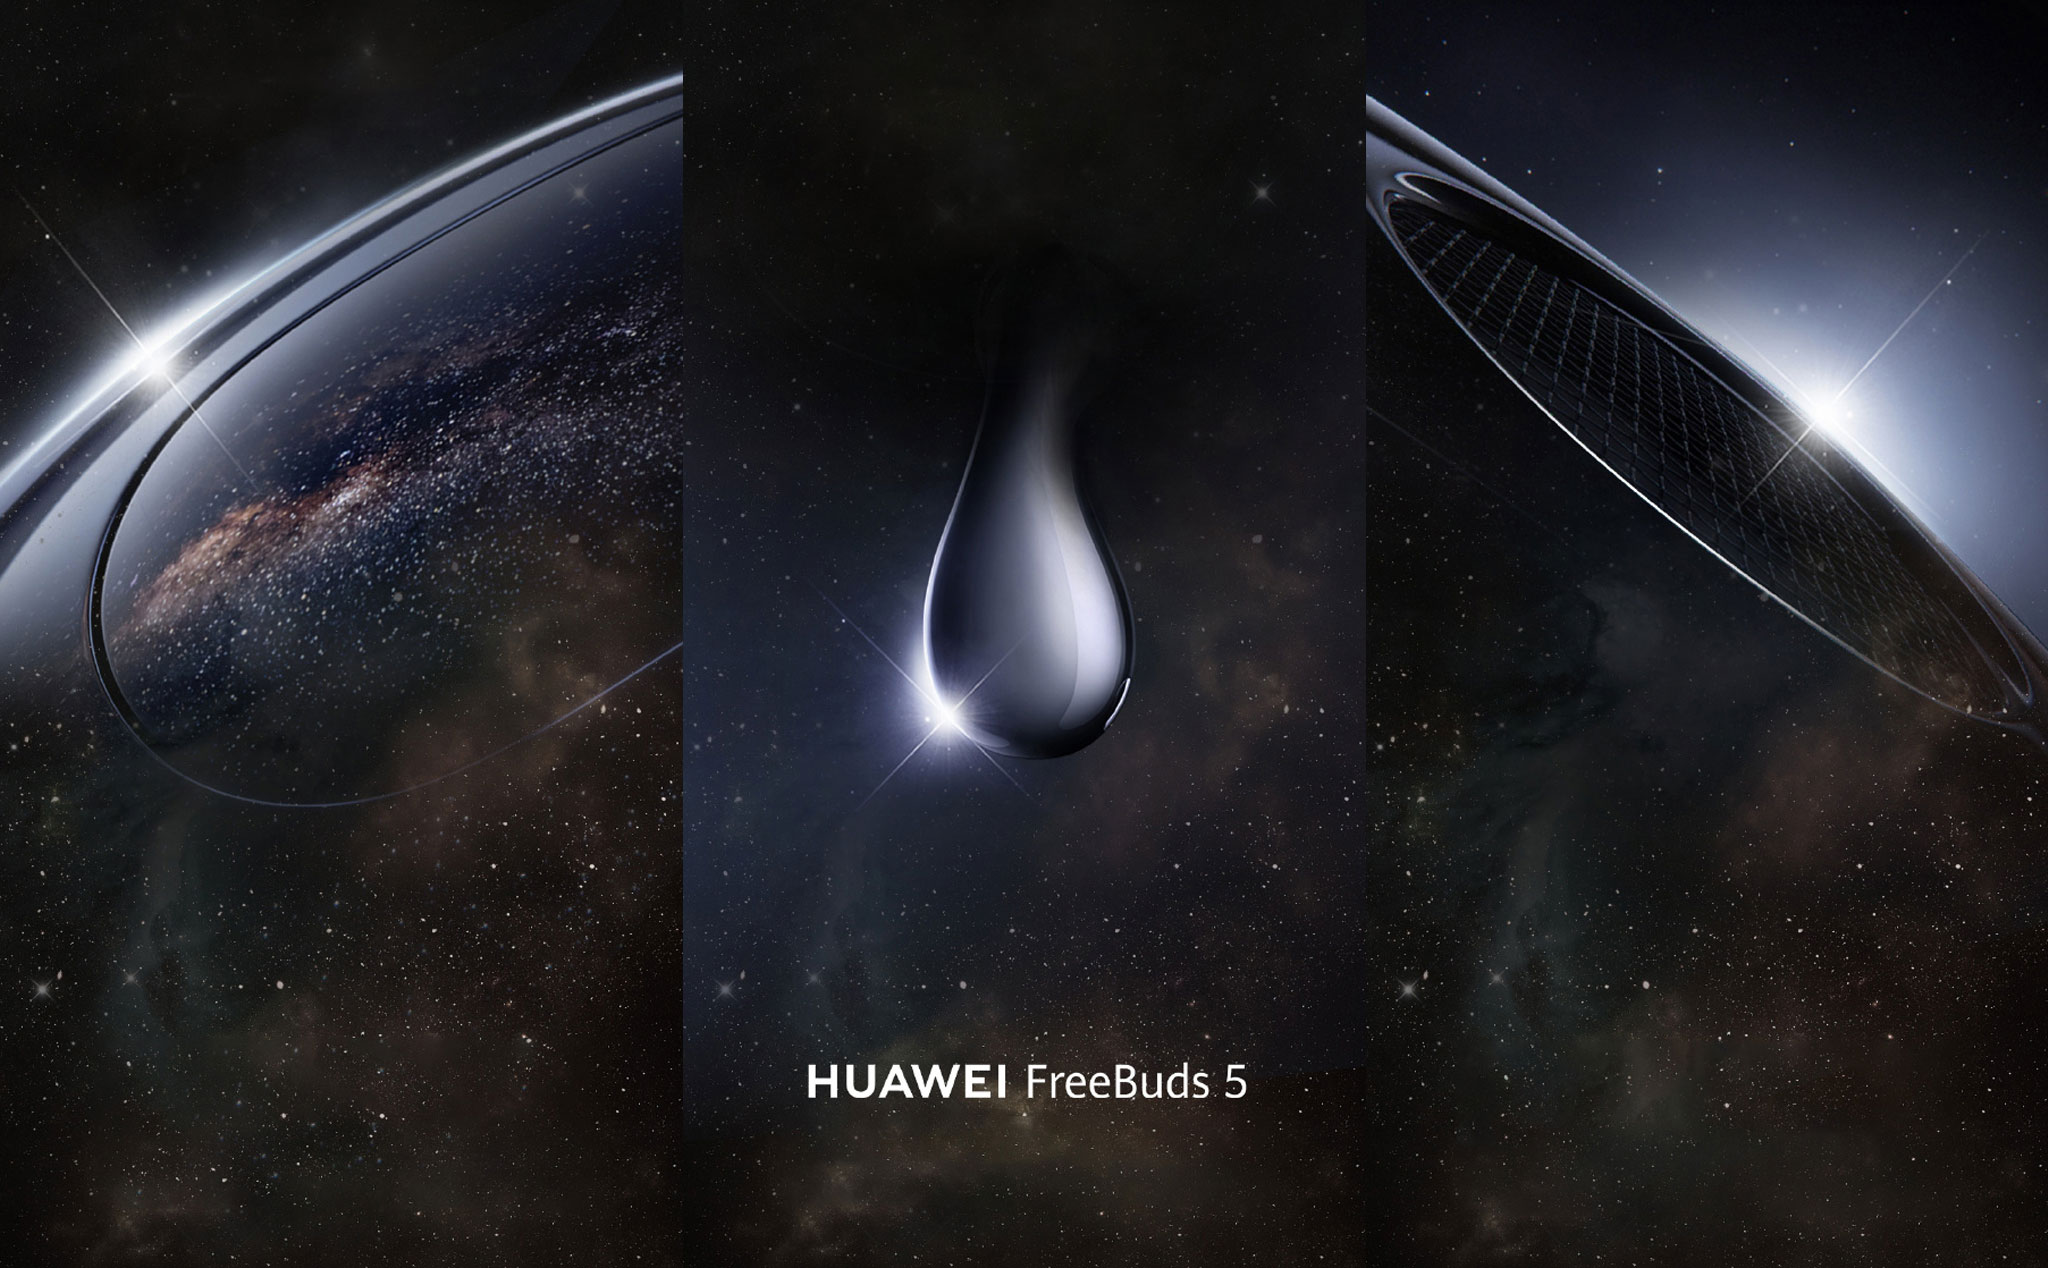 Huawei hé lộ tai nghe FreeBuds 5 với thiết kế giọt nước mới